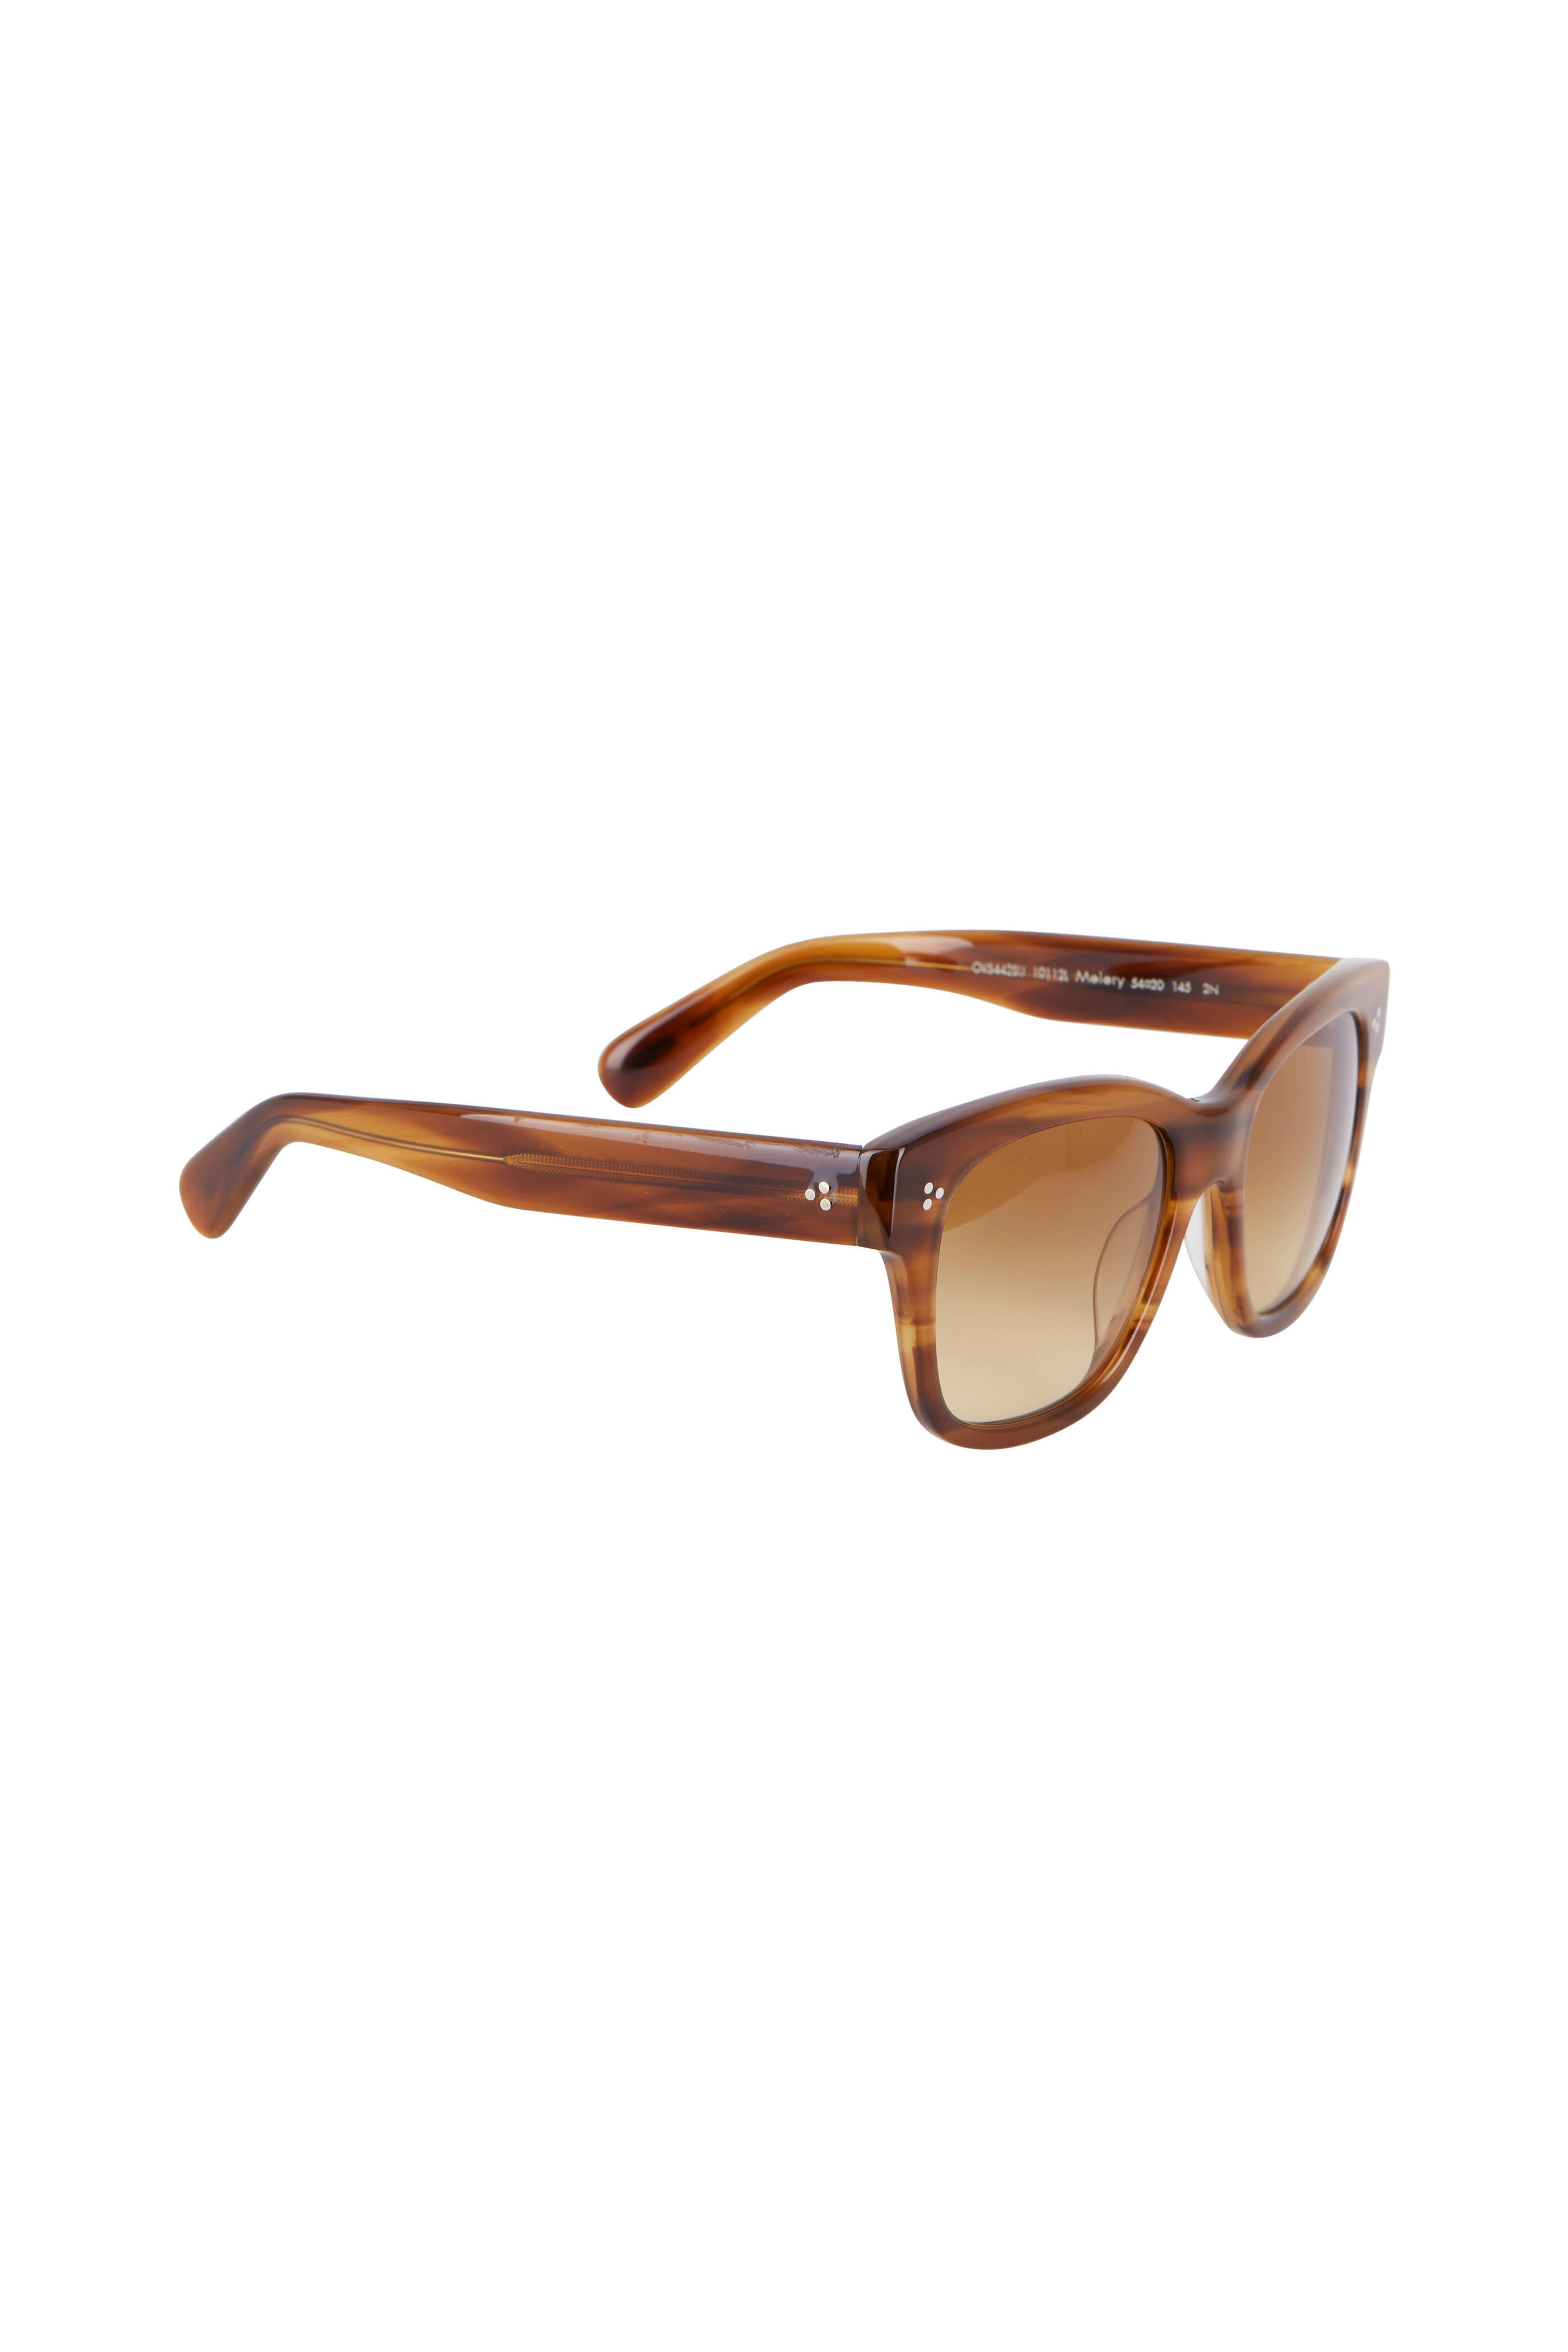 Oliver Peoples - Melery Raintree & Amber Brown Gradient Sunglasses